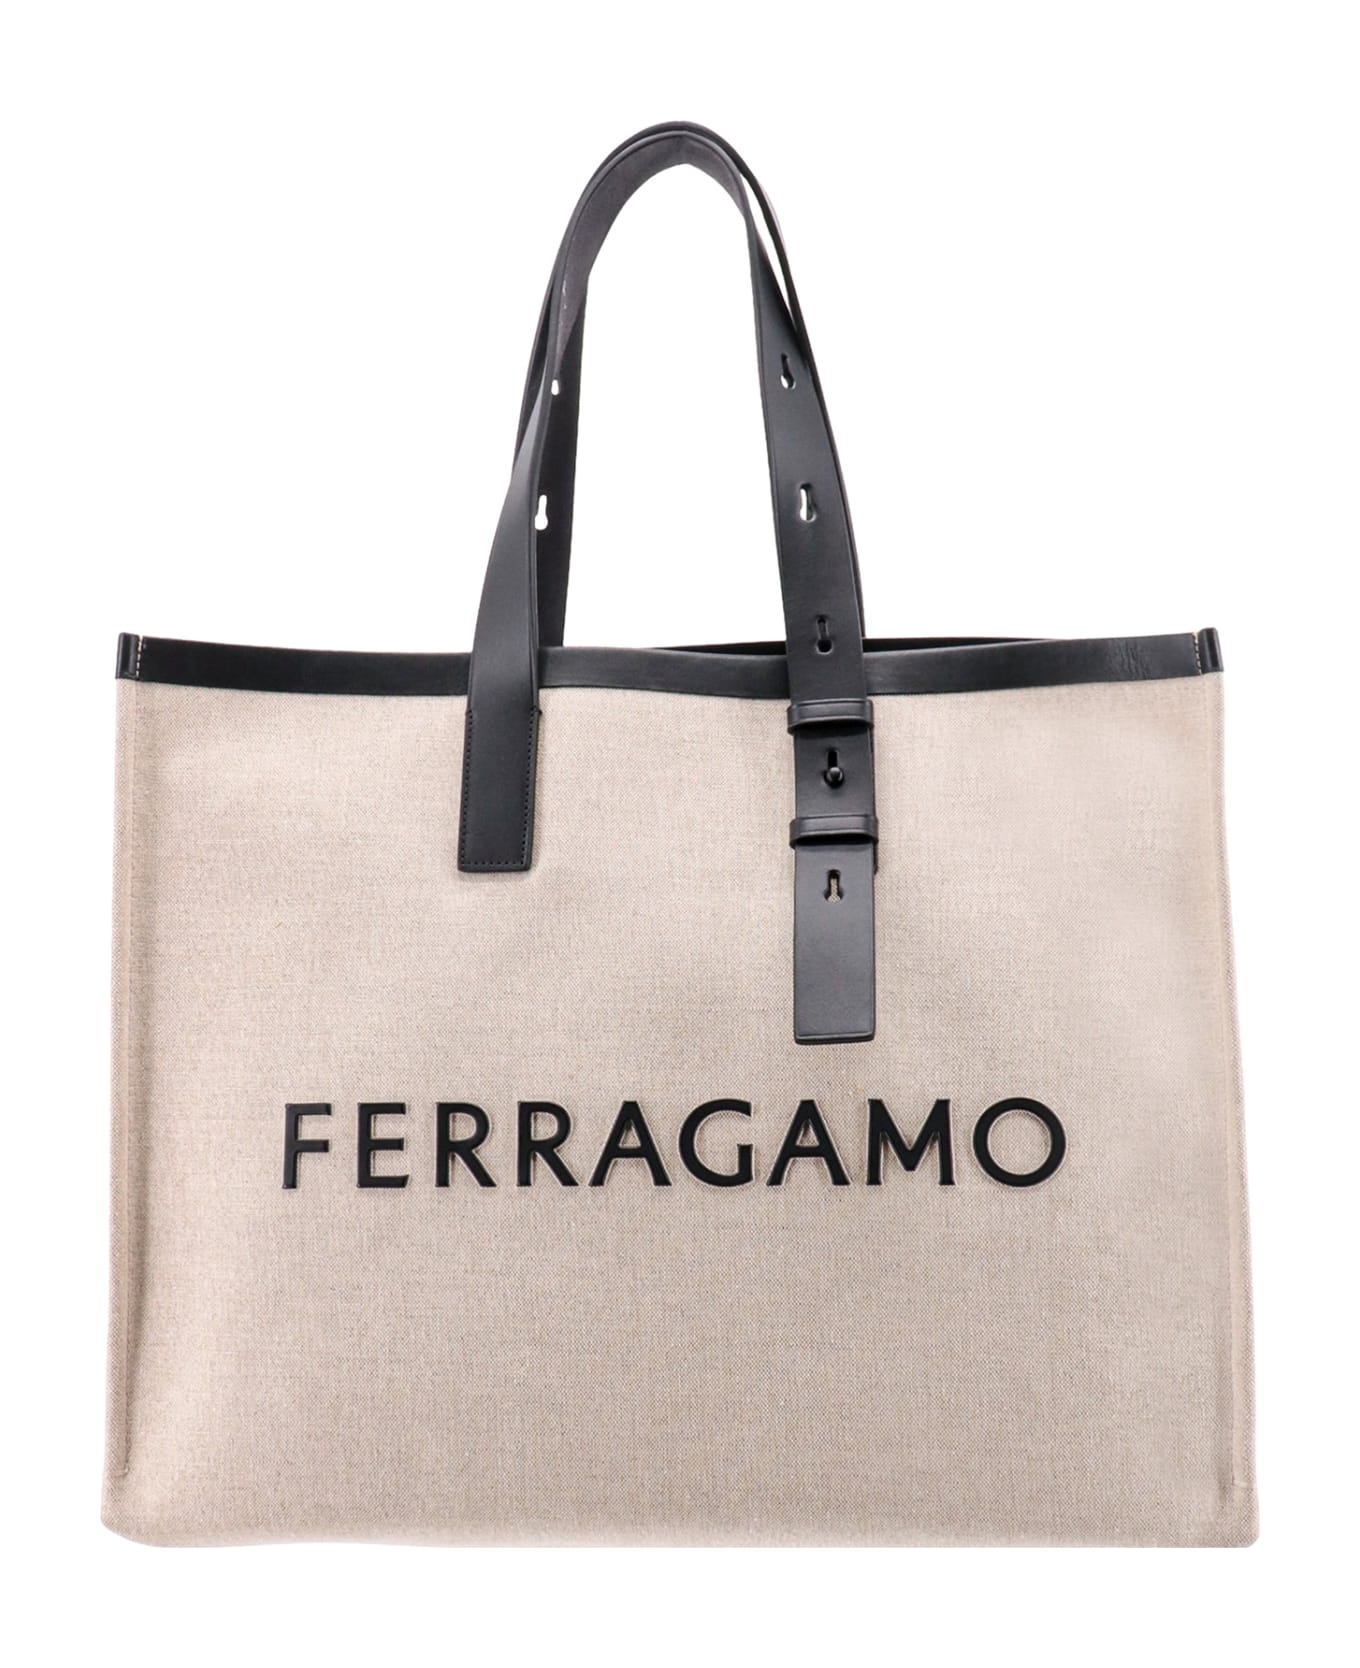 Ferragamo Handbag - Nero